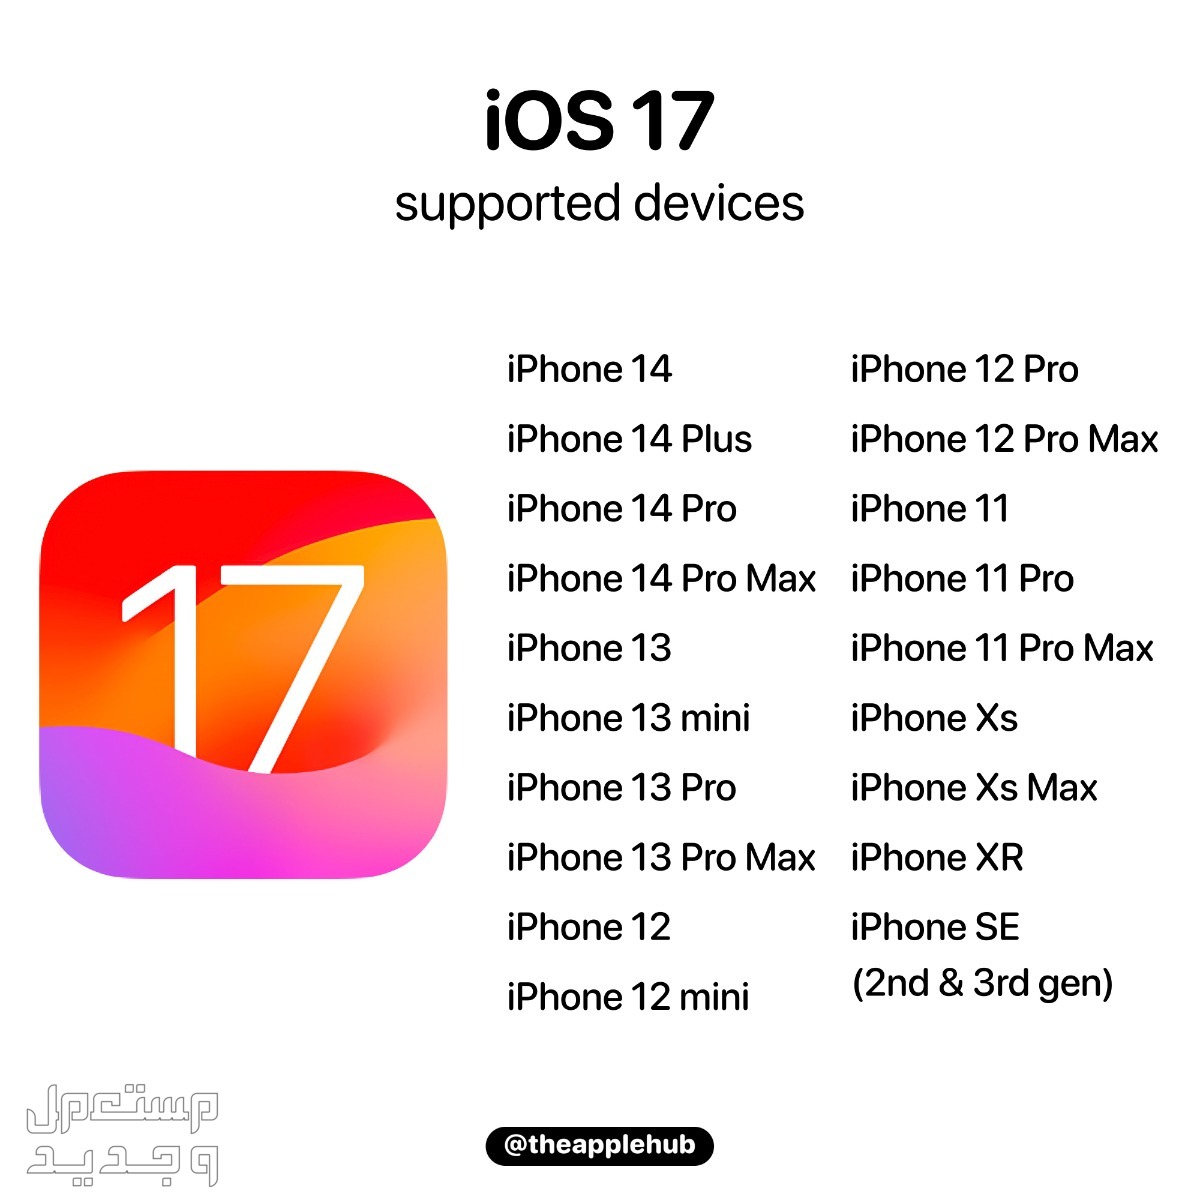 نظام iOS 17 لهواتف ايفون بمميزات جديدة تعرف عليها في تونس